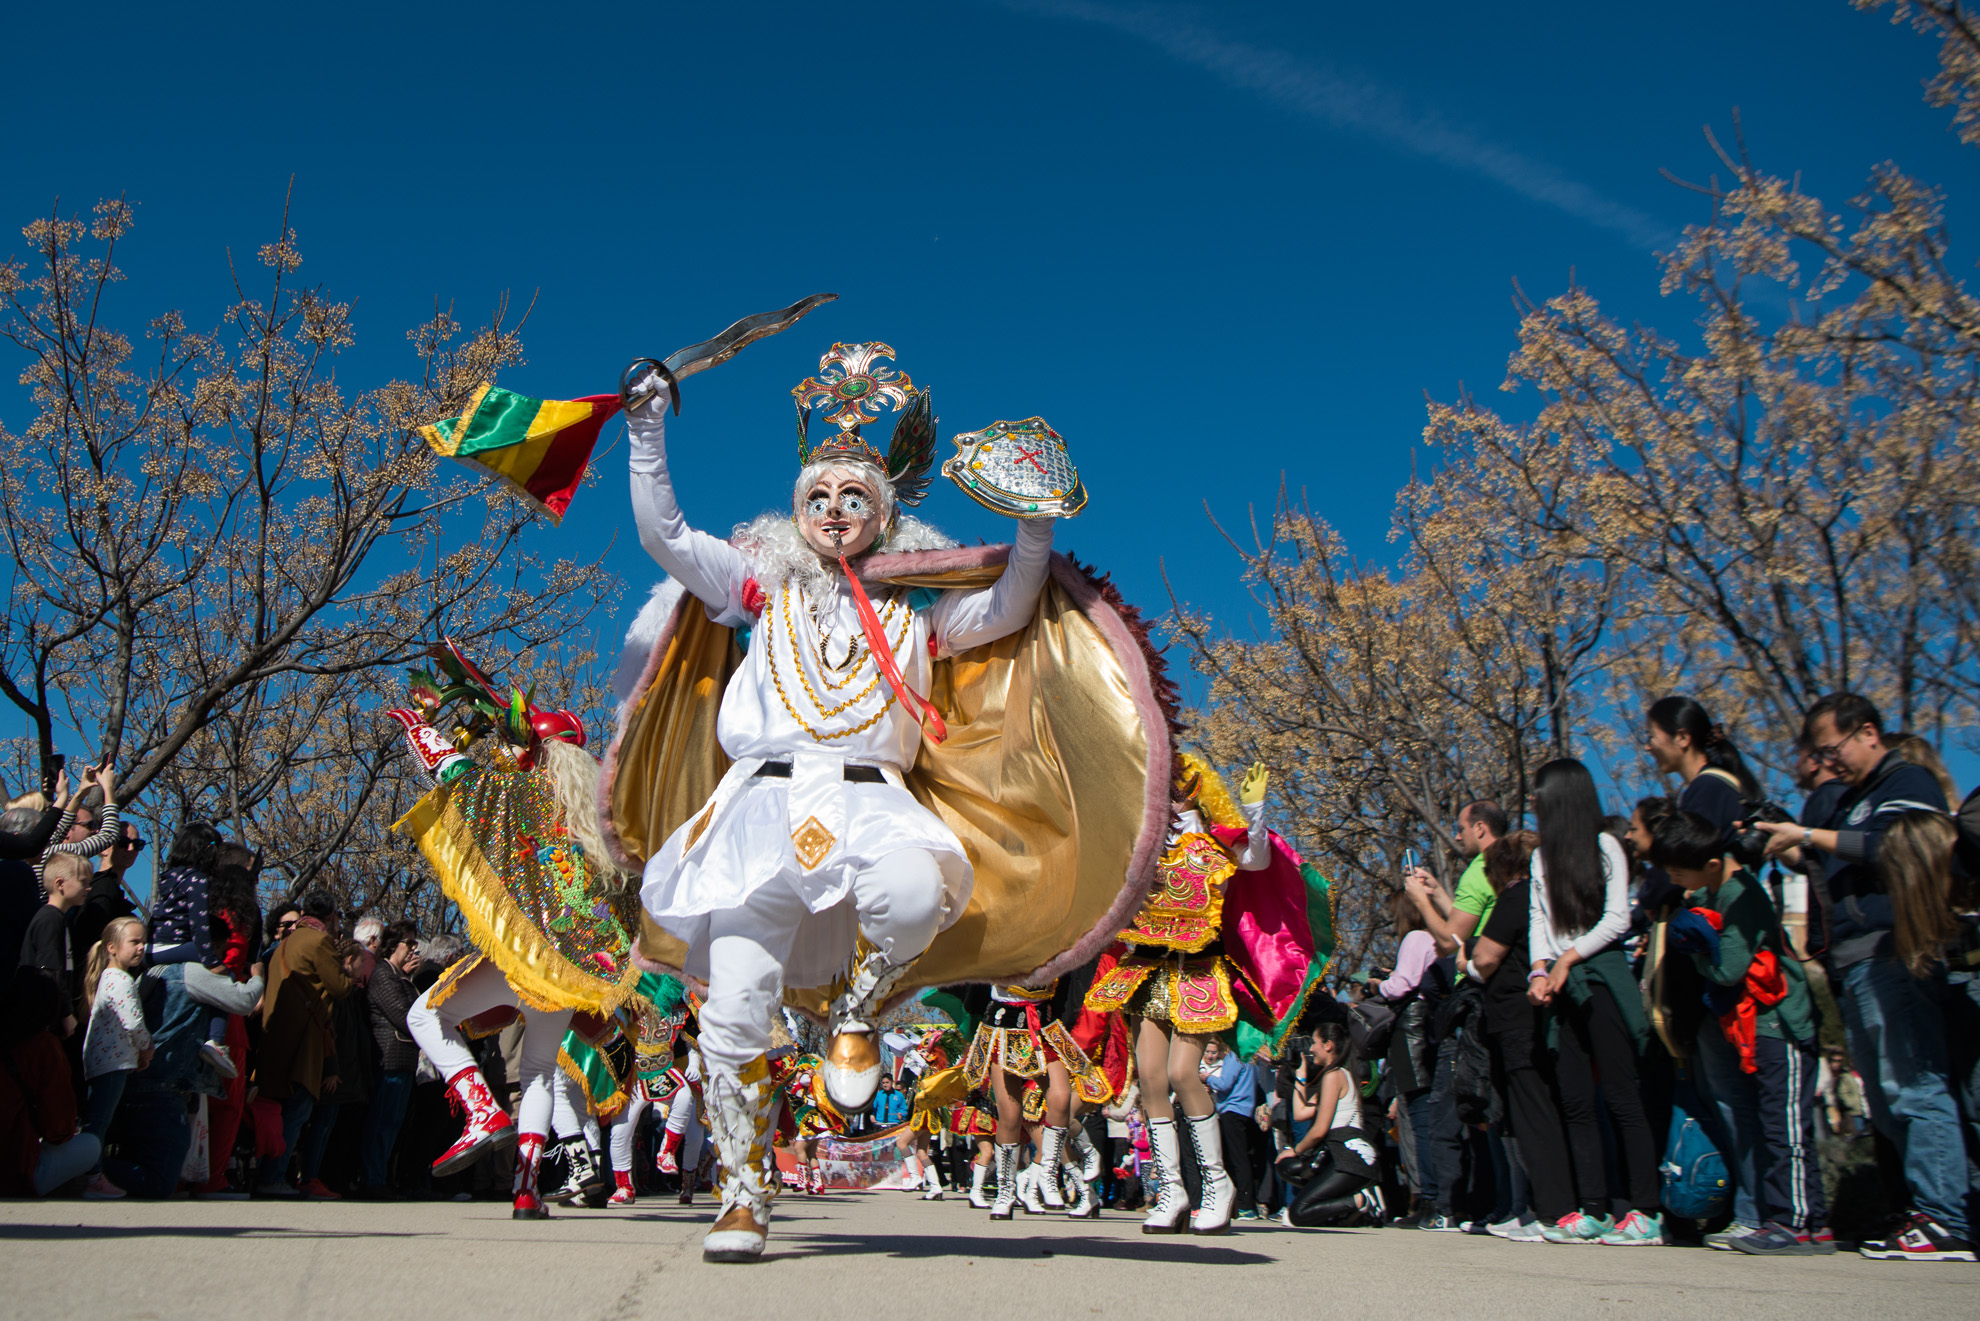 Danzantes del carnaval de Bolivia participaron en el Carnaval Latino de Madrid Río.